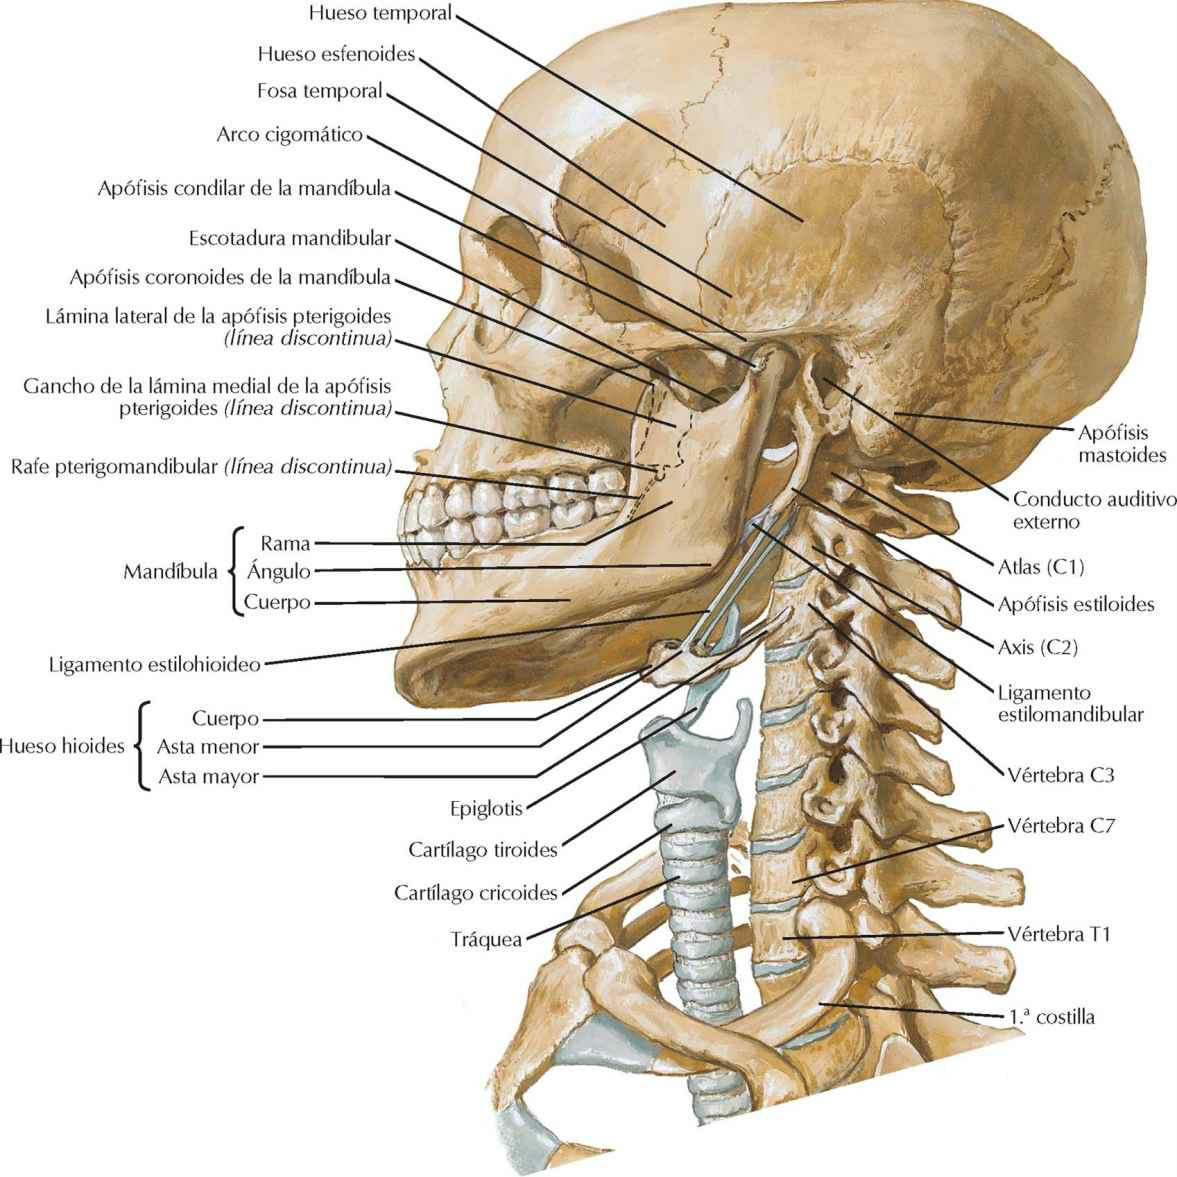 Esqueleto óseo de cabeza y cuello.